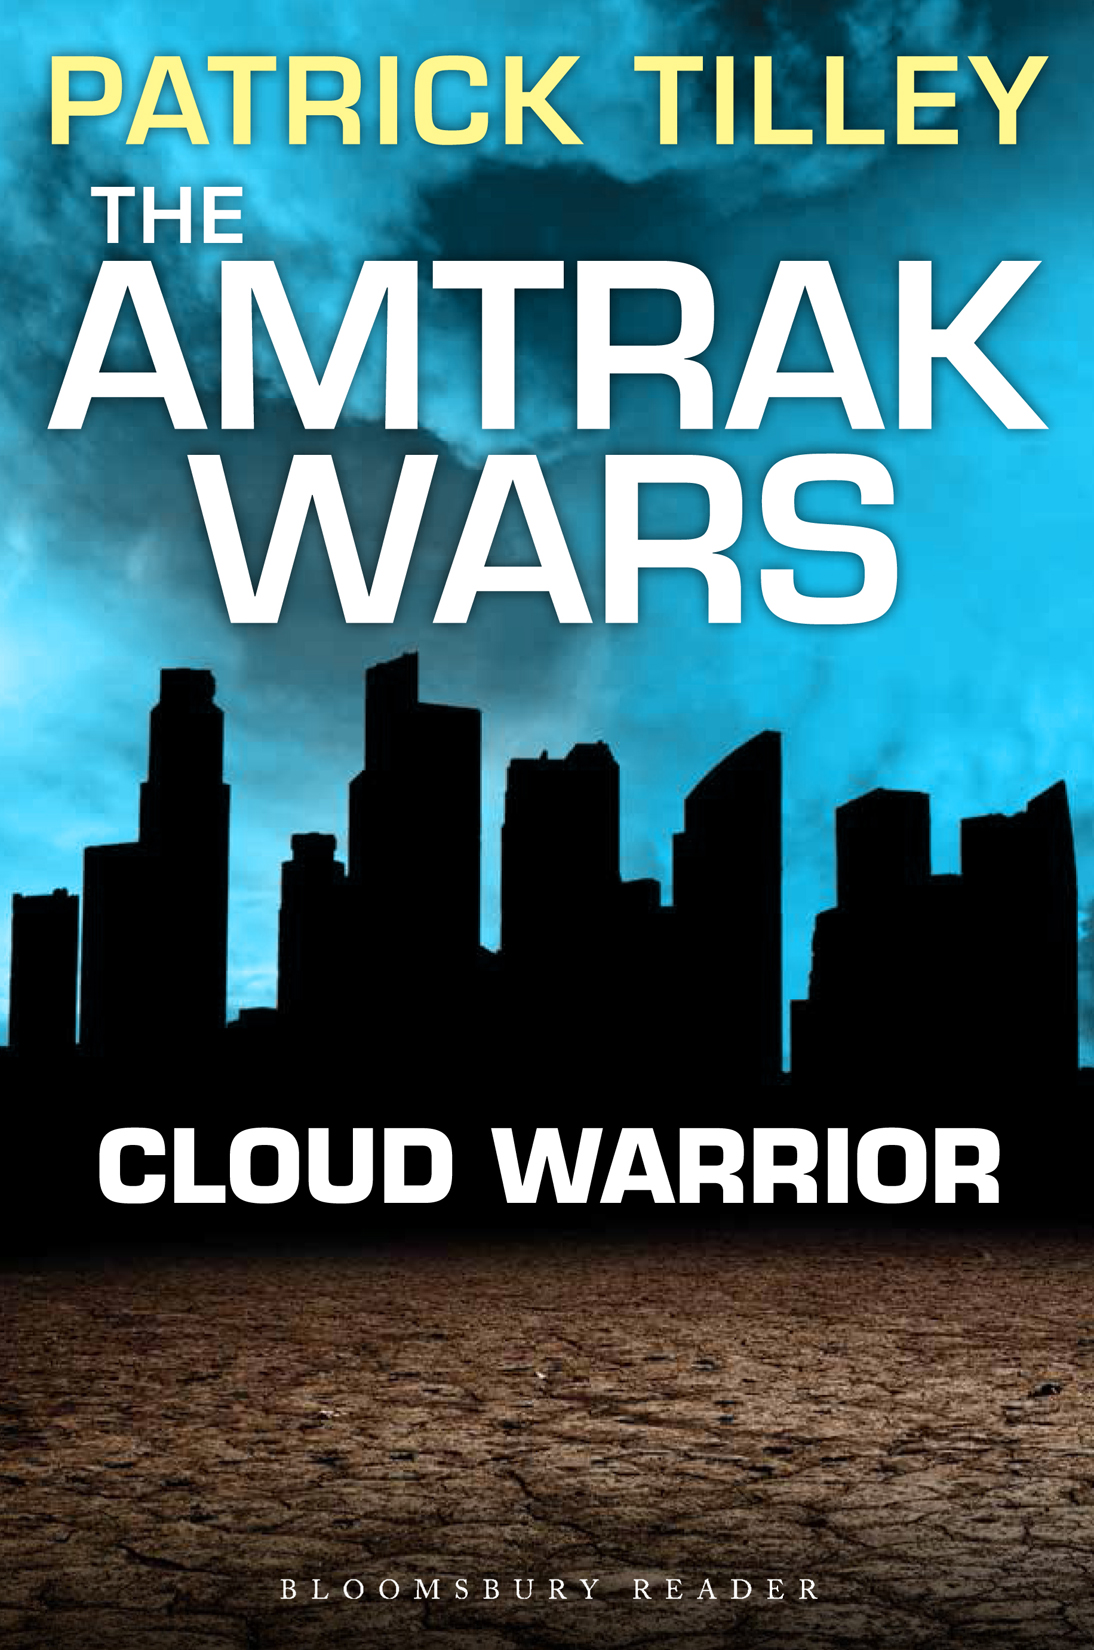 Cloud Warrior